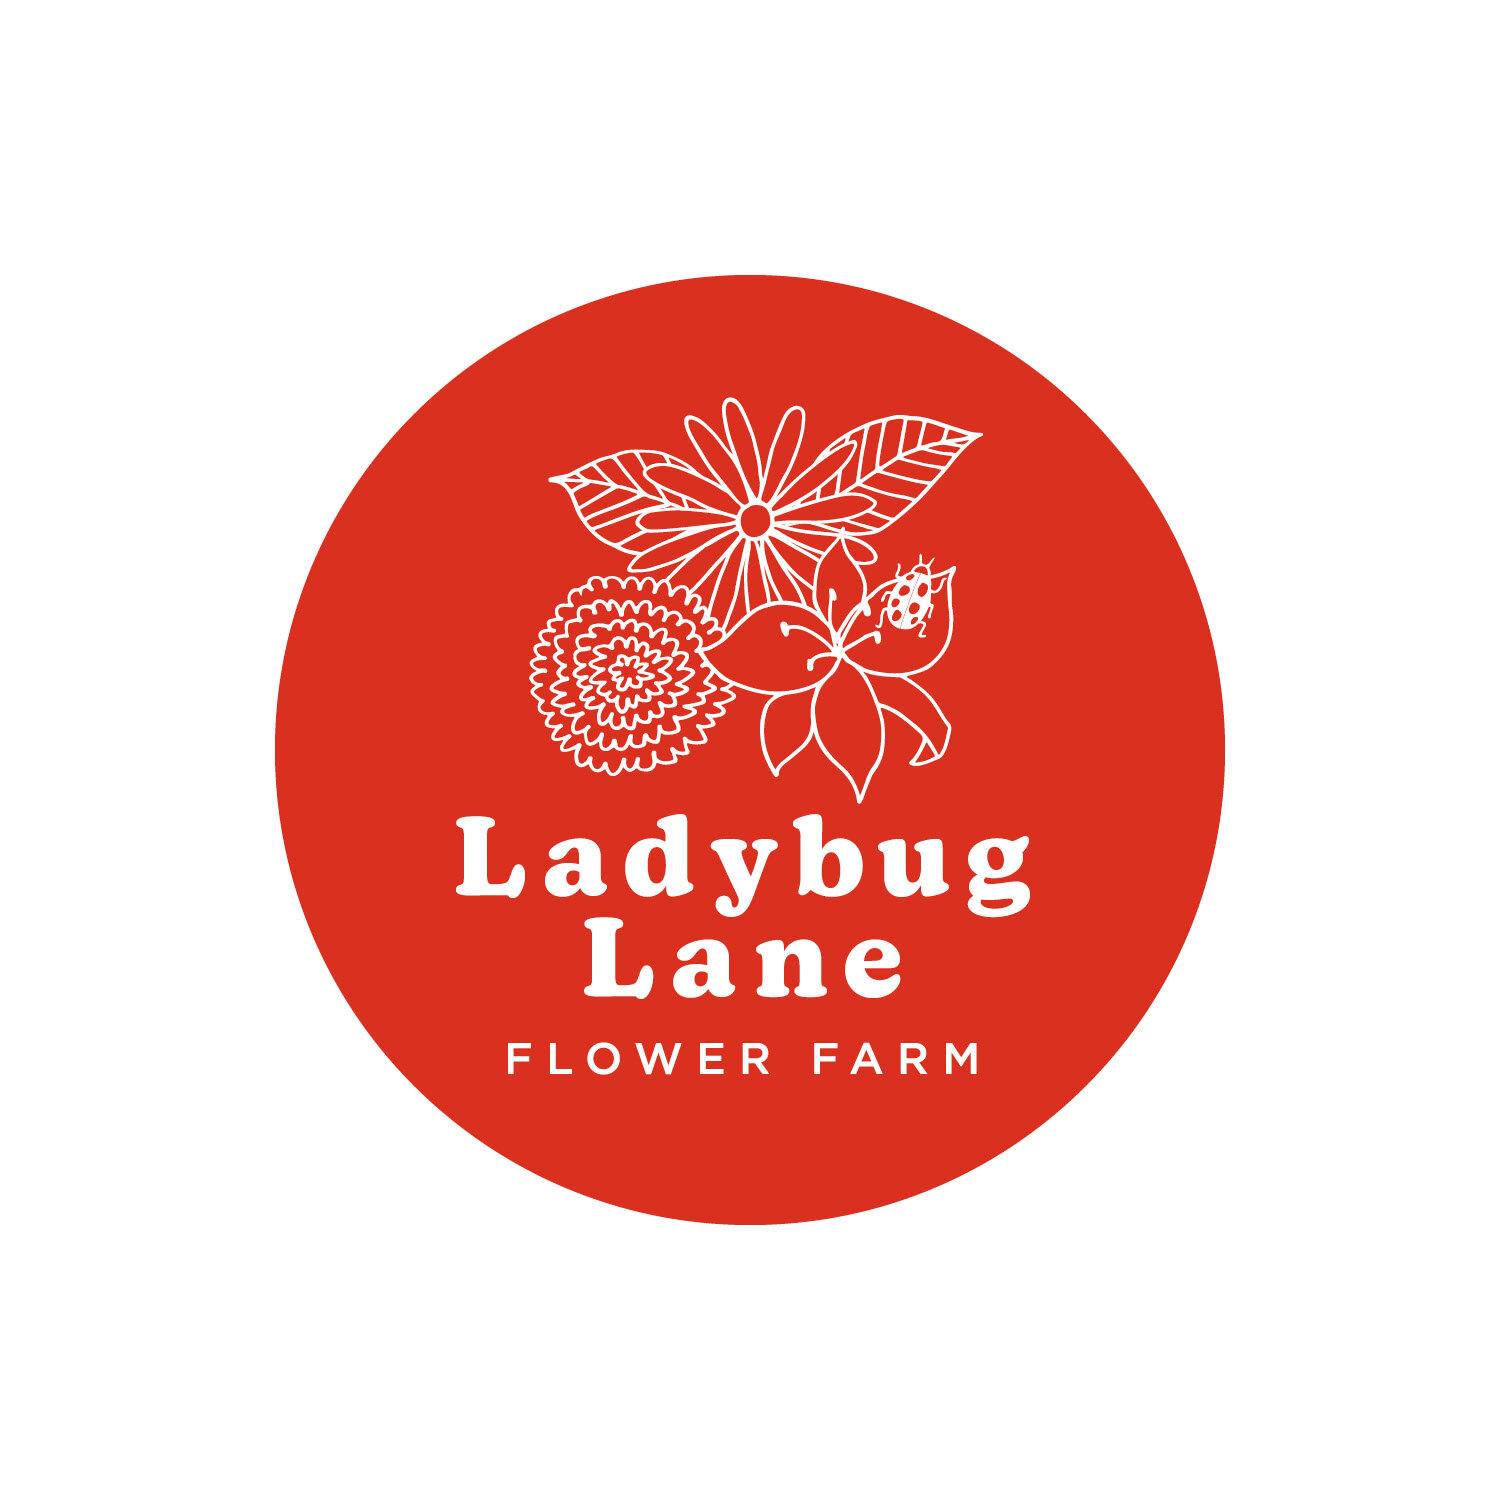 Ladybug Lane jpegs6.jpg